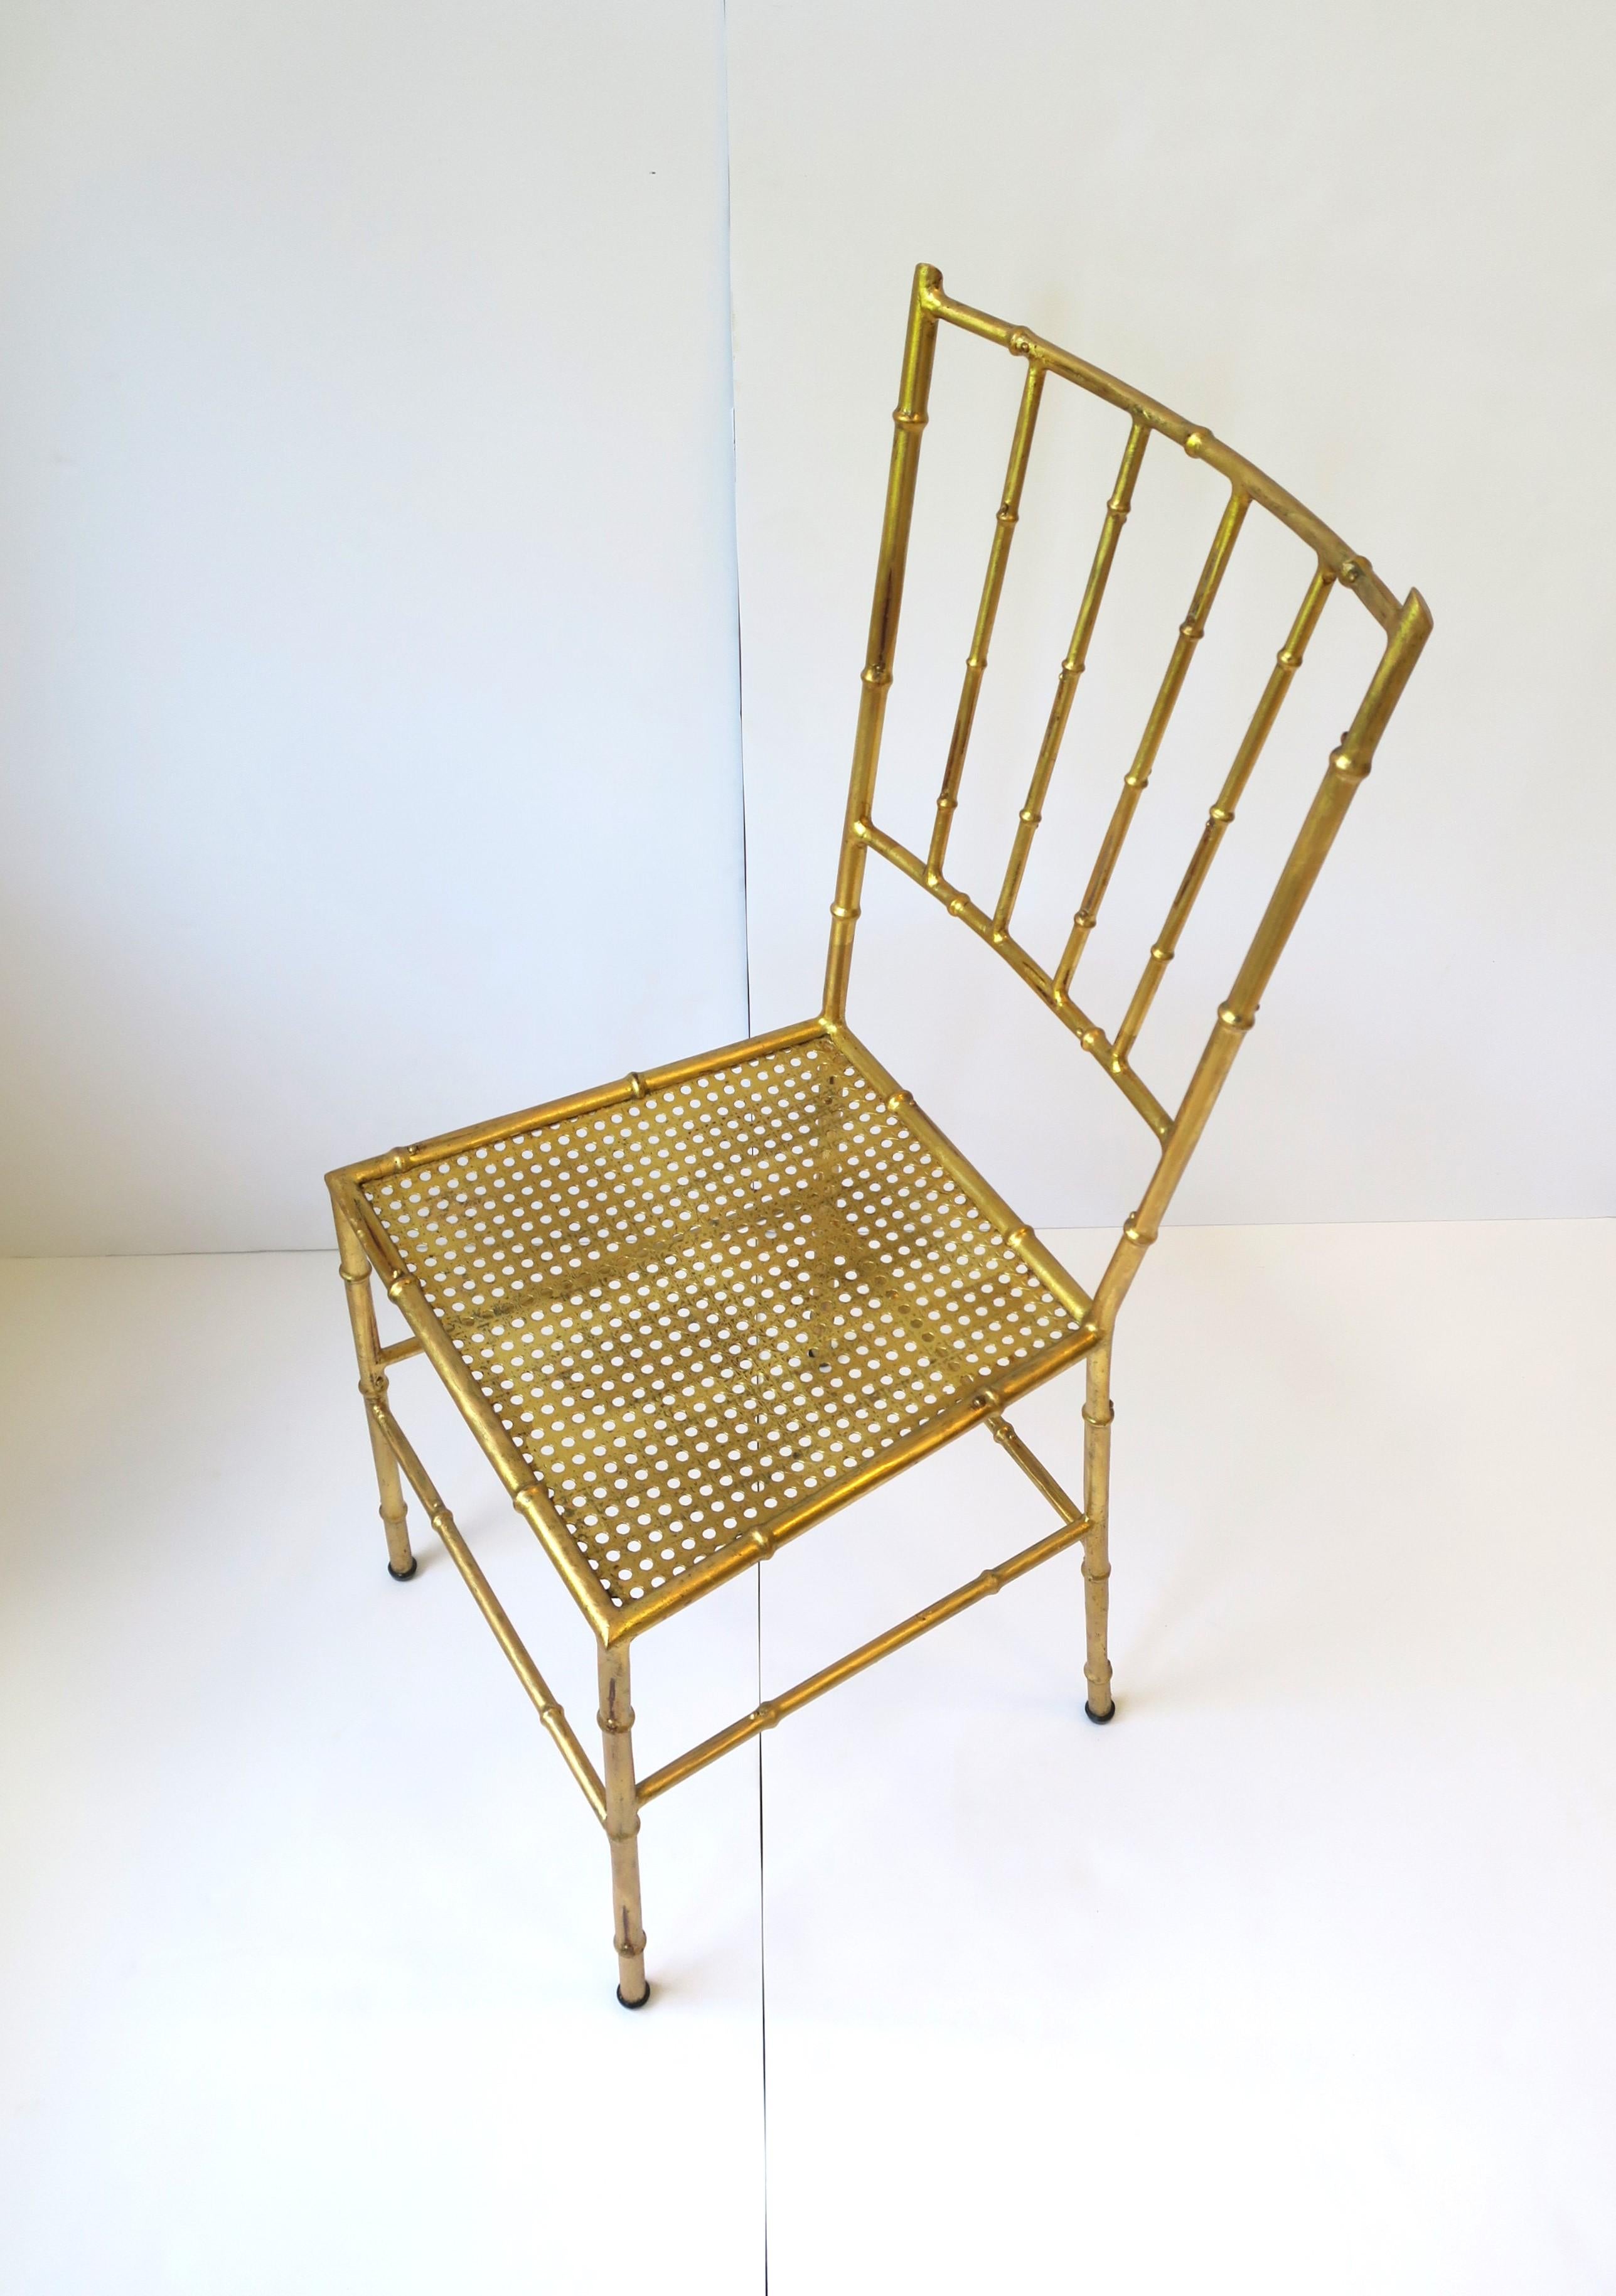 Italienischer Schreibtisch, Esszimmer- oder Beistellstuhl aus vergoldetem Metall und Bambus, Mitte des 20. Jahrhunderts, Italien. Der Stuhl hat einen Bambus-Metallrahmen mit einem vergoldeten Metallsitz und einem Sitzkissen (optional). Er eignet